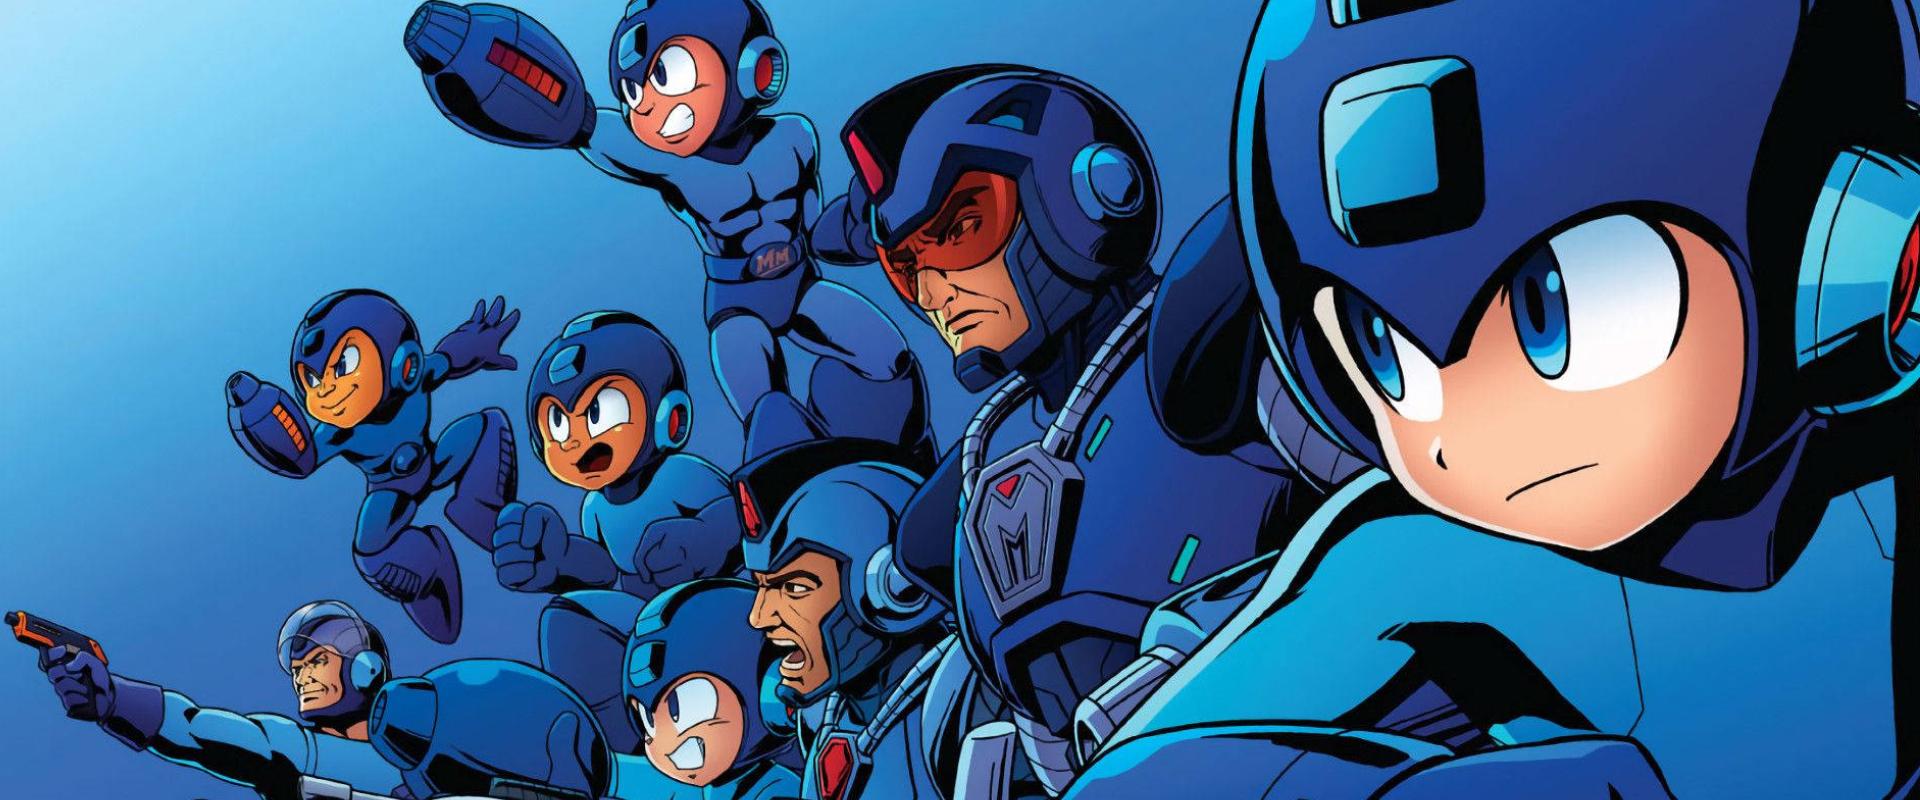 Capcom Highlights: Újra feltűnik a színen Mega Man, de nem úgy ahogy szeretnénk